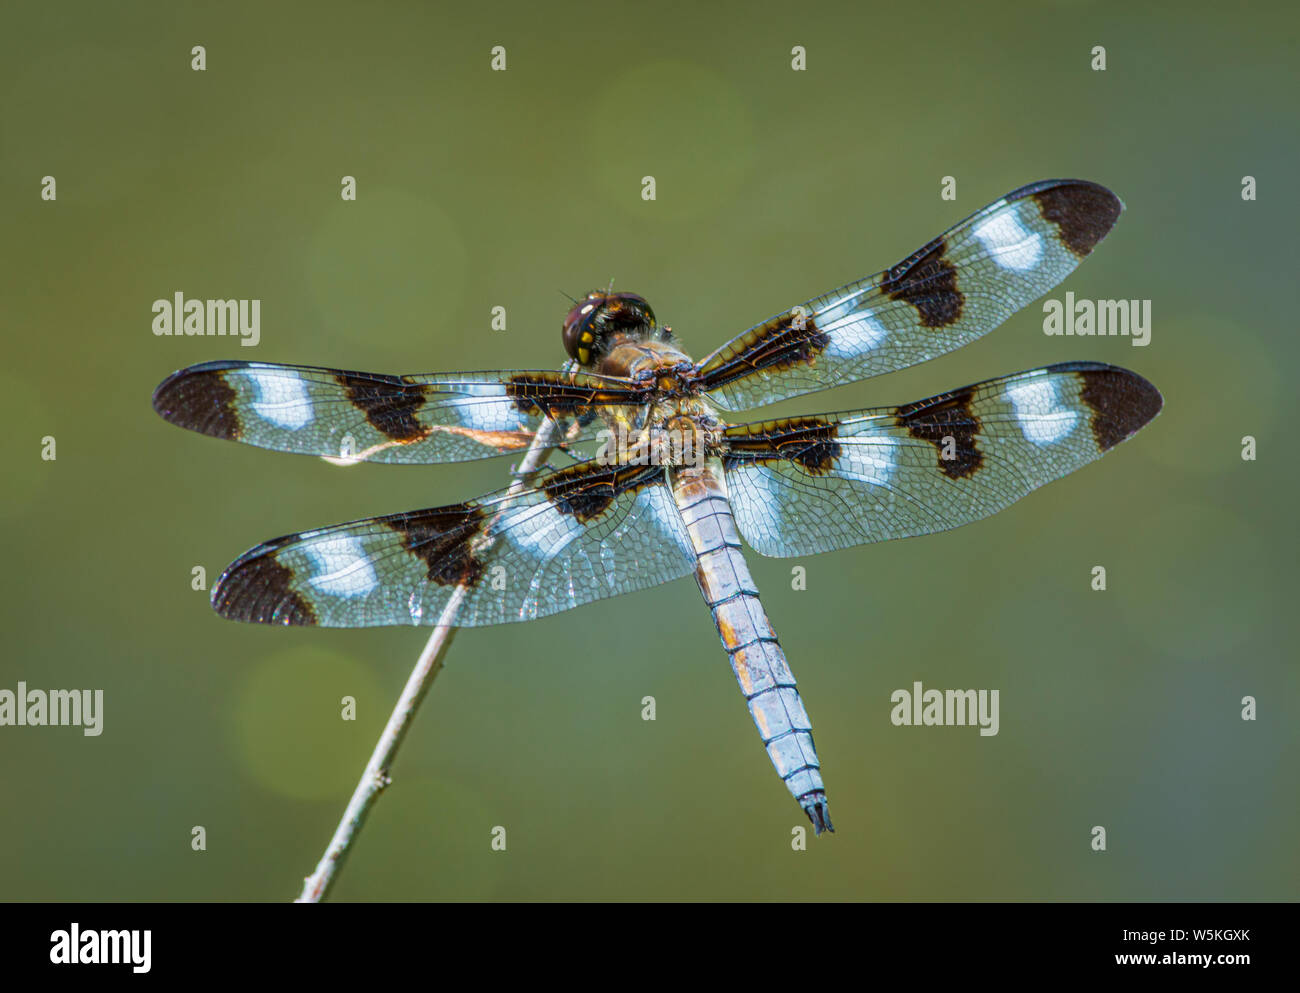 Dragonfly skimmer a dodici punte (Libellula pulchella) che riposa sul gambo del salice nello stagno della palude, Castle Rock Colorado USA. Foto scattata a luglio. Foto Stock